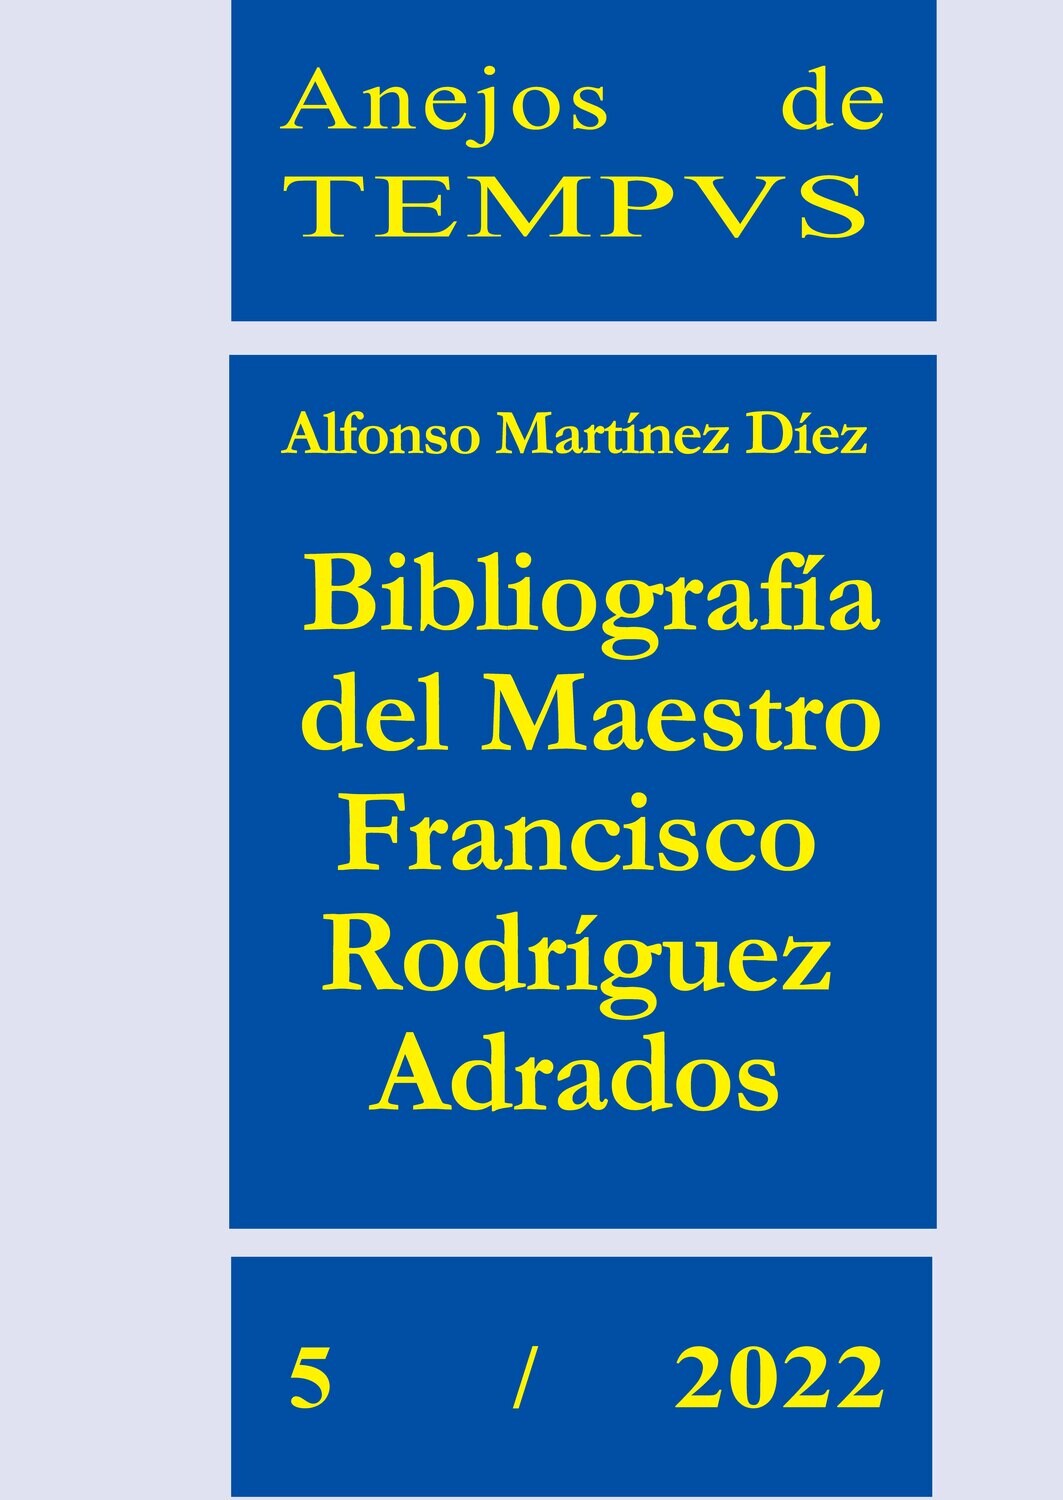 BIBLIOGRAFÍA DEL MAESTRO FRANCISCO RODRÍGUEZ ADRADOS (ANEJOS DE TEMPVS Nº 5 / 2022)